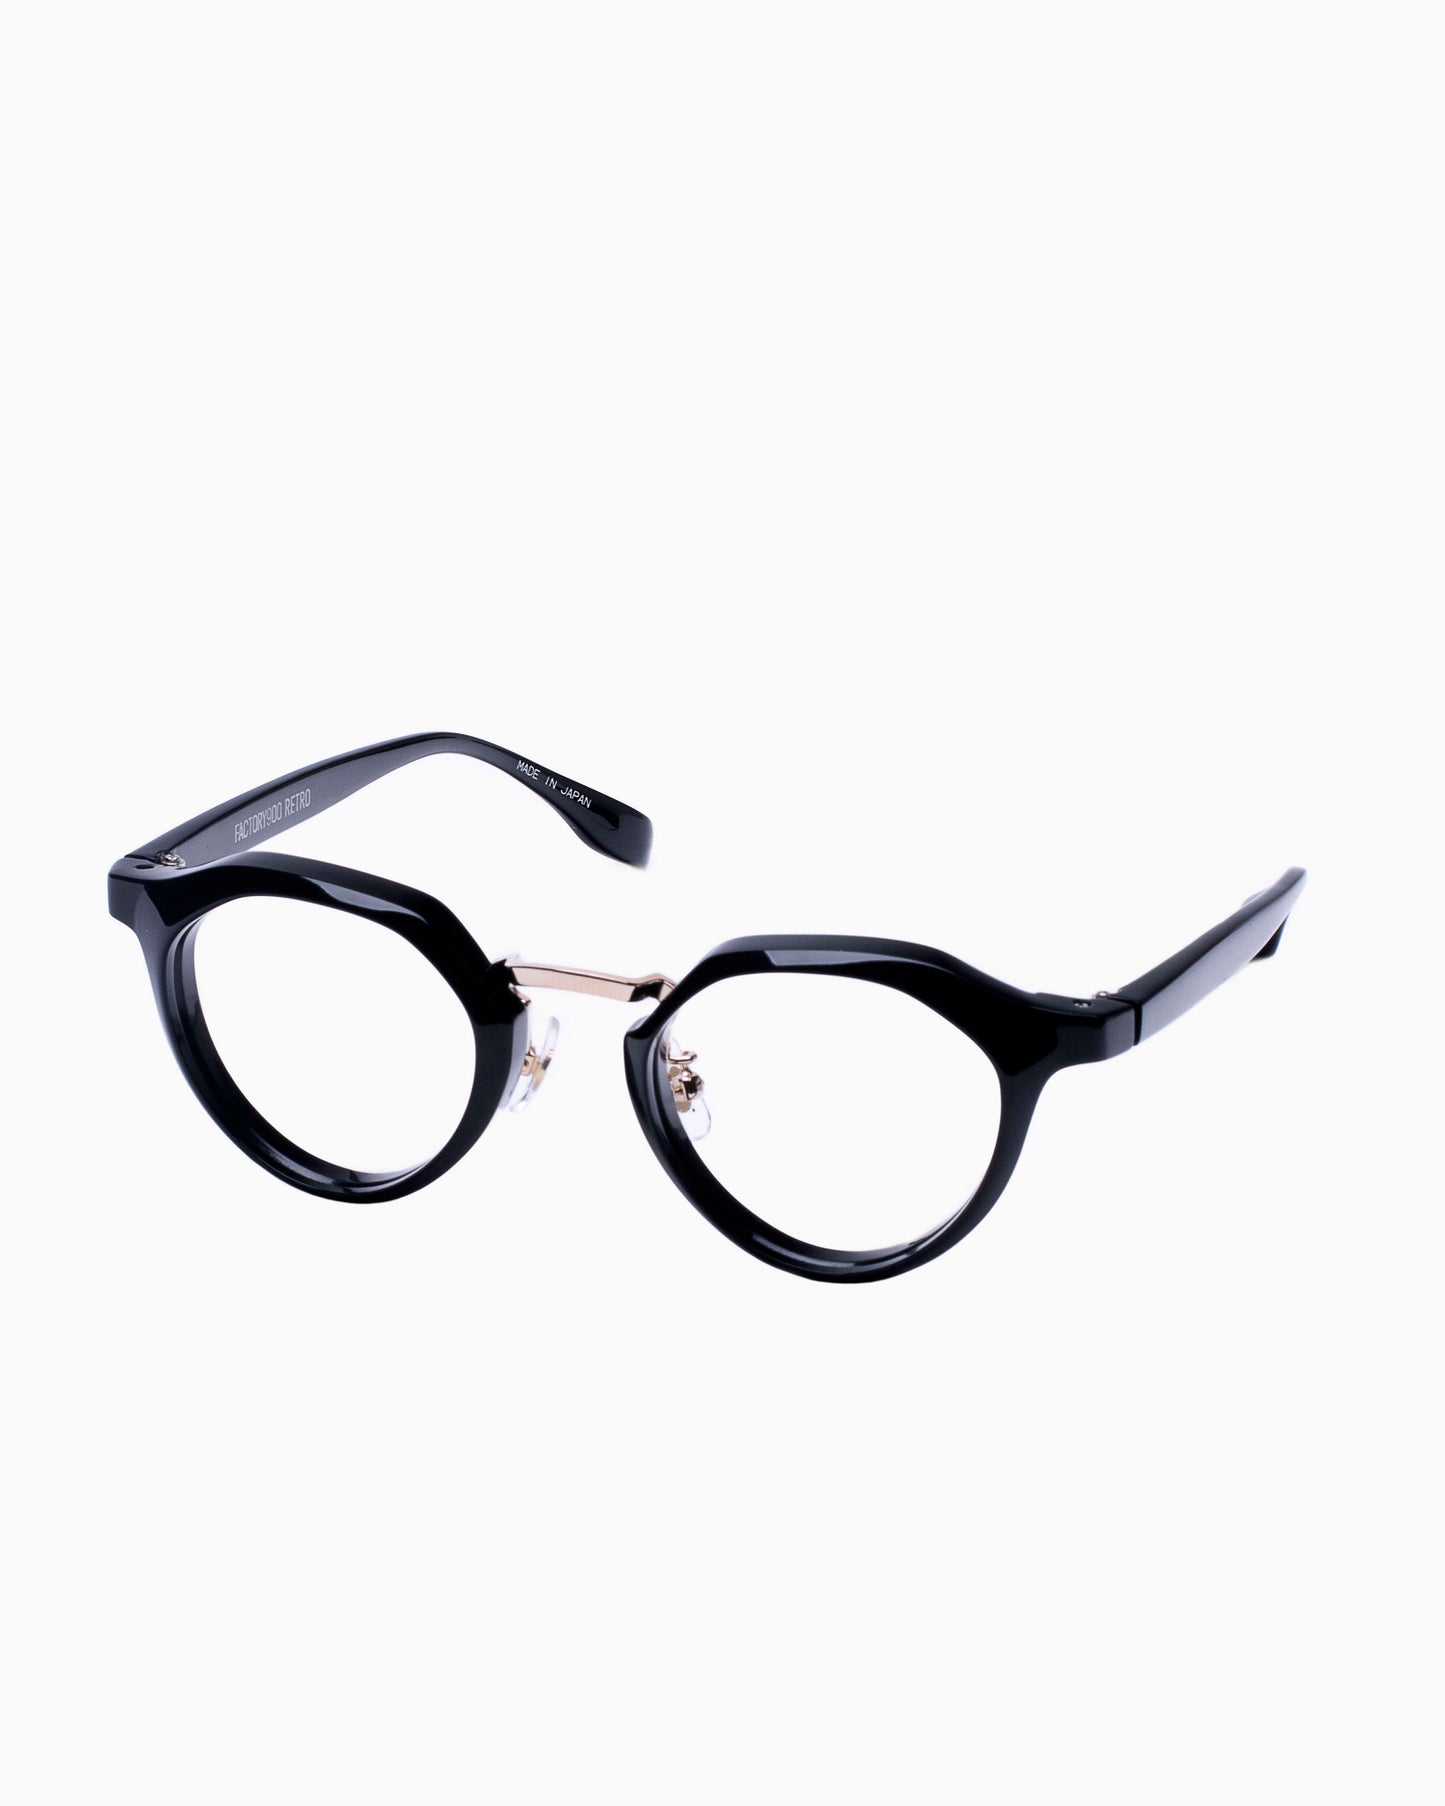 Factory 900-RF054-001 | glasses bar